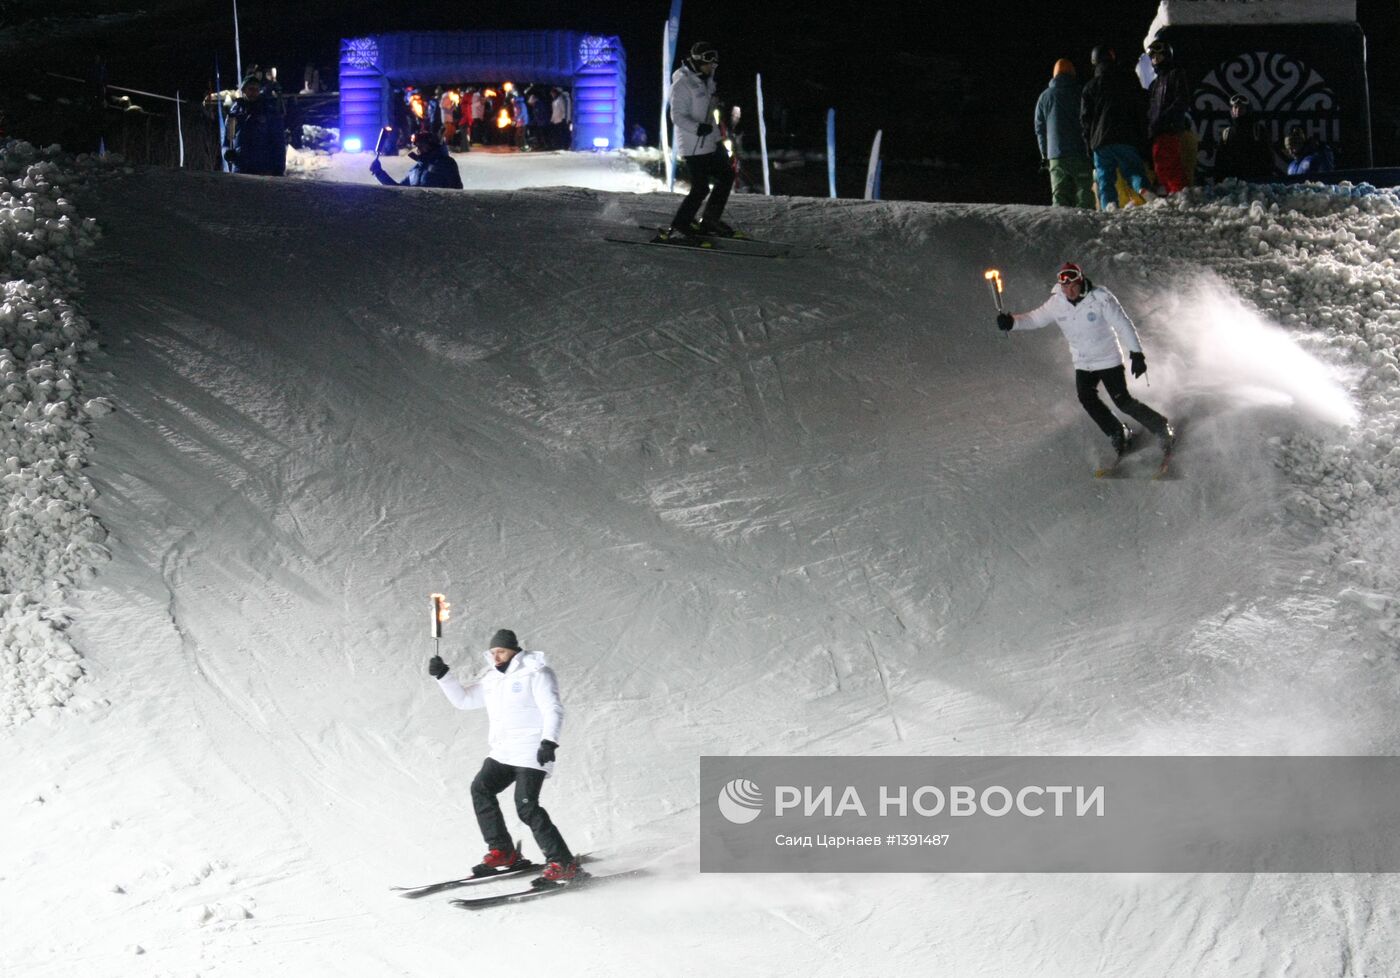 Презентация горнолыжного курорта "Ведучи" в Чеченской Республике